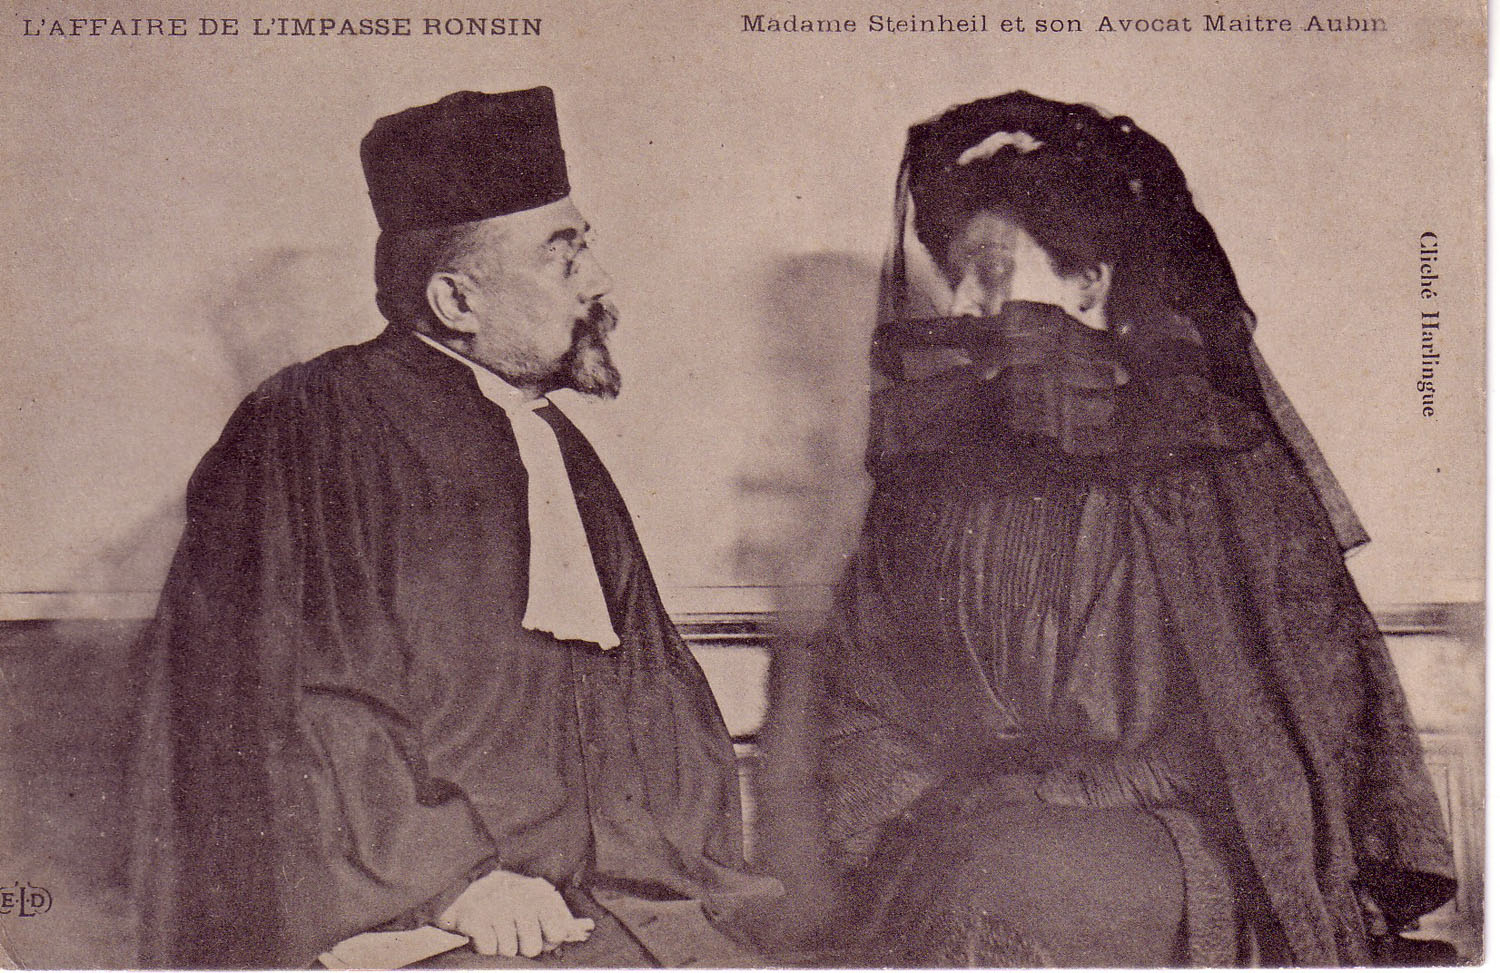 Madame Steinheil and her lawyer Maitre Aubin